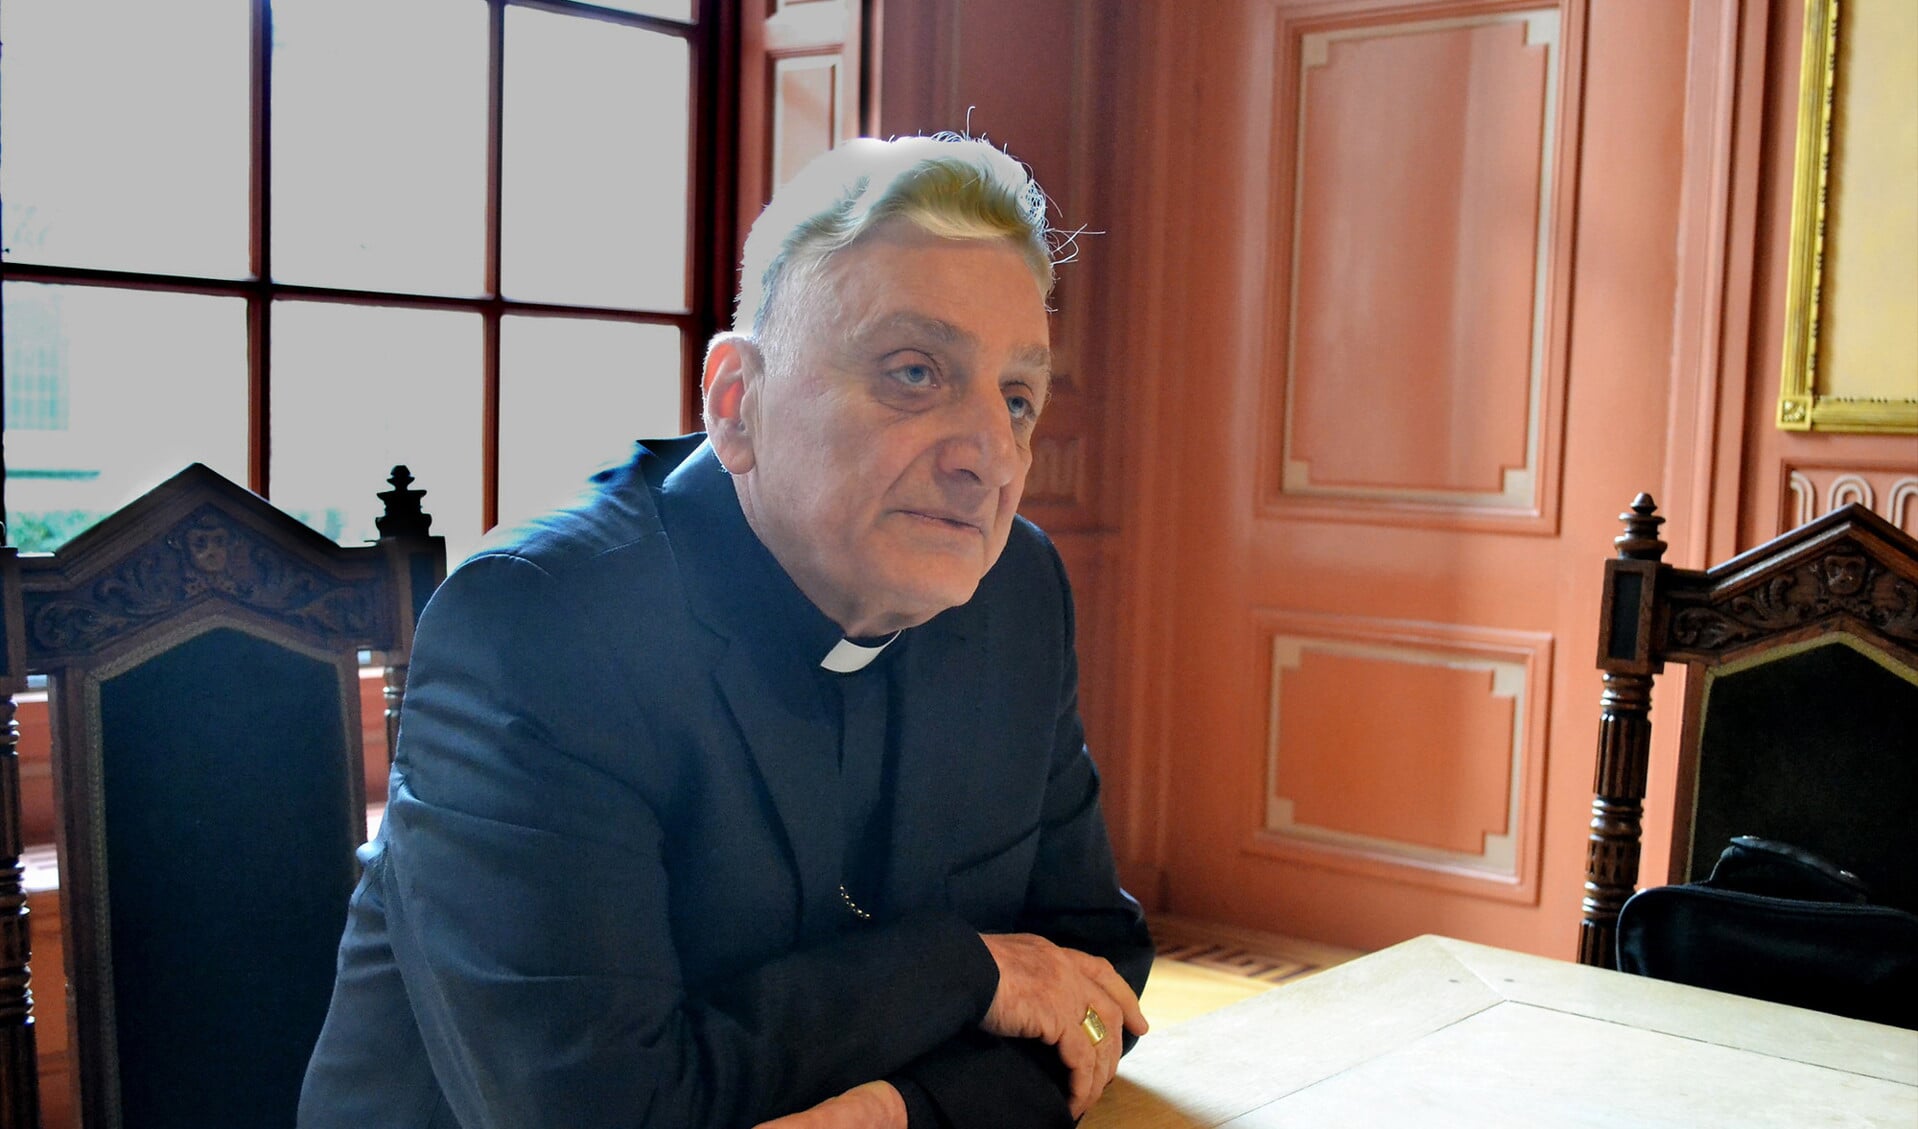 De bisschop van Aleppo, Antoine Audo, is ervan overtuigd dat in Syrië de kijk van moslims op christenen is veranderd. ‘Zij zijn onder de indruk van de liefdadigheid van christenen voor de armen’, zegt hij tijdens een bezoek aan Utrecht.